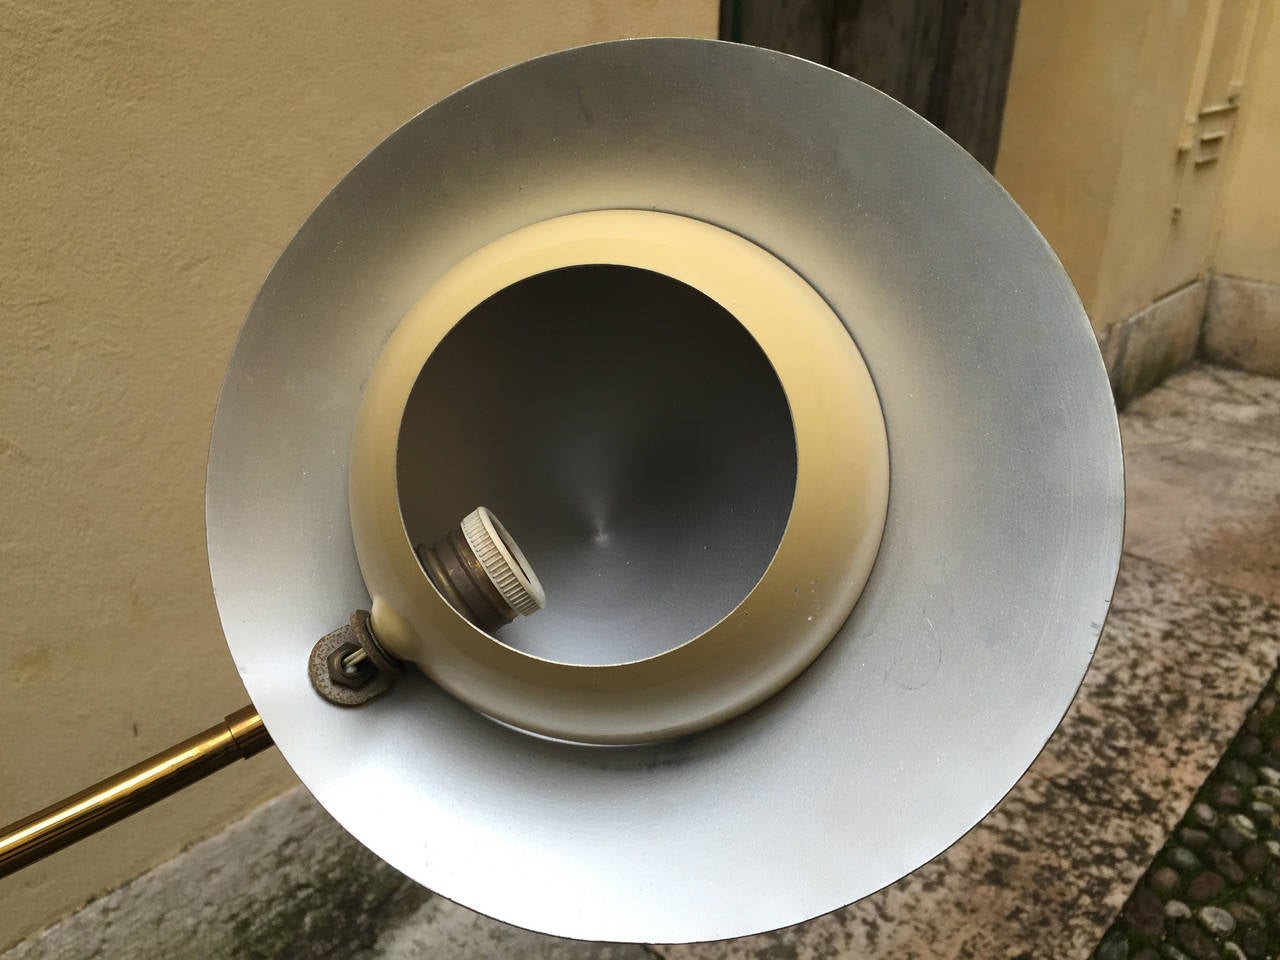 Italian Table Lamp Designed by Stilnovo